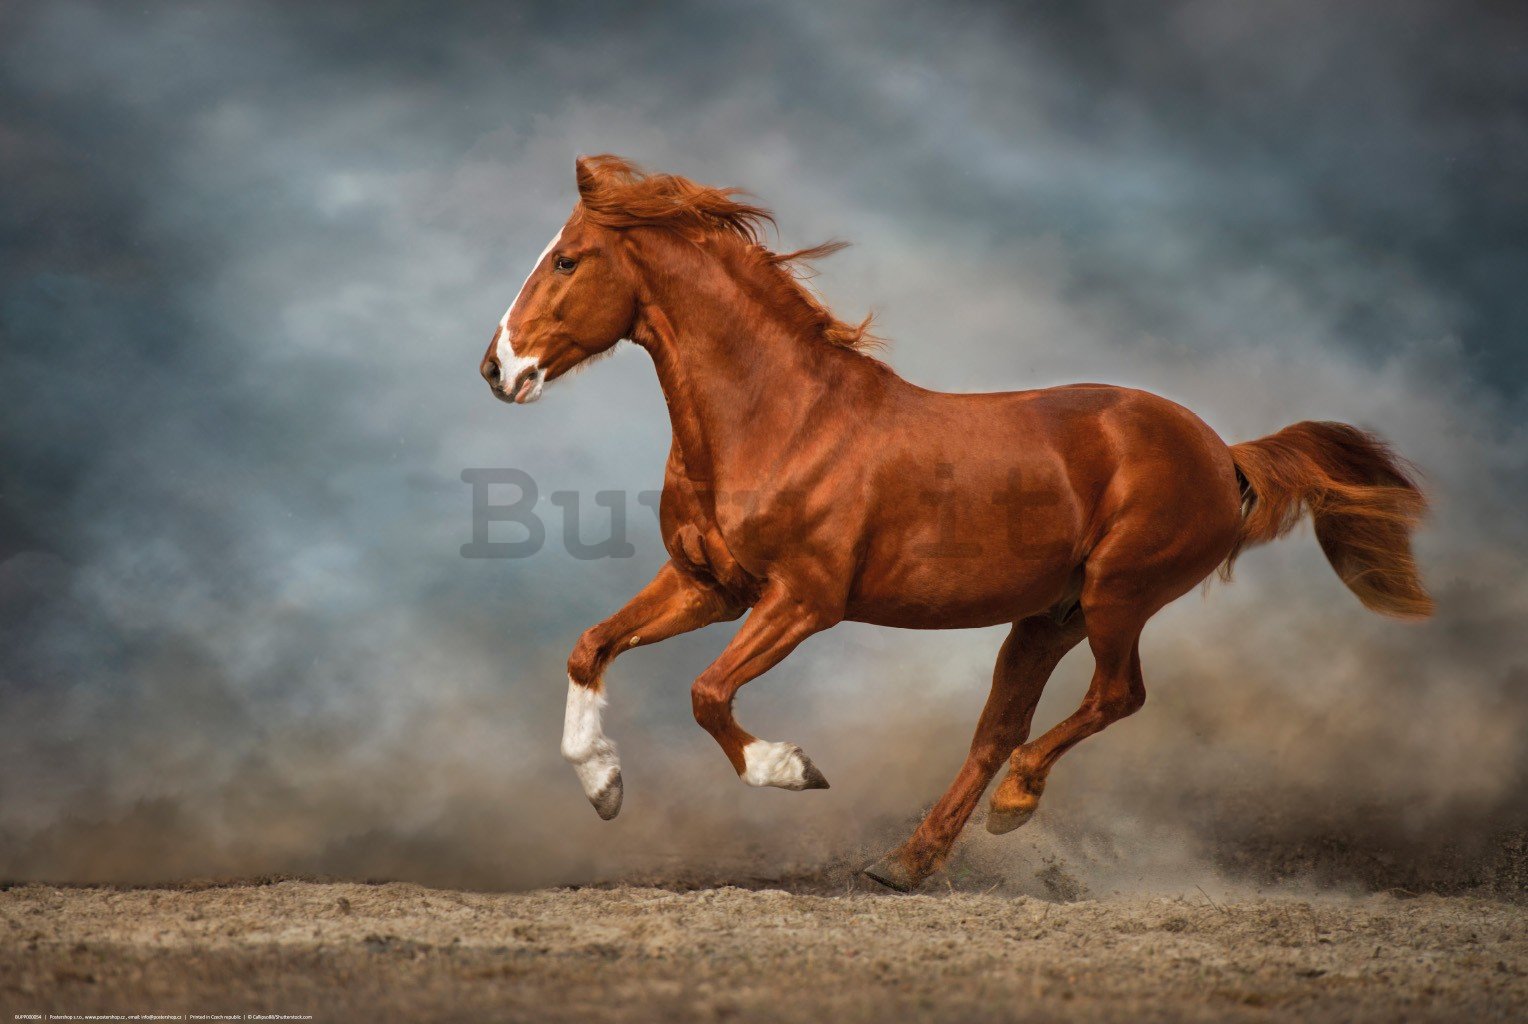 Poster: Cavallo marrone al galoppo